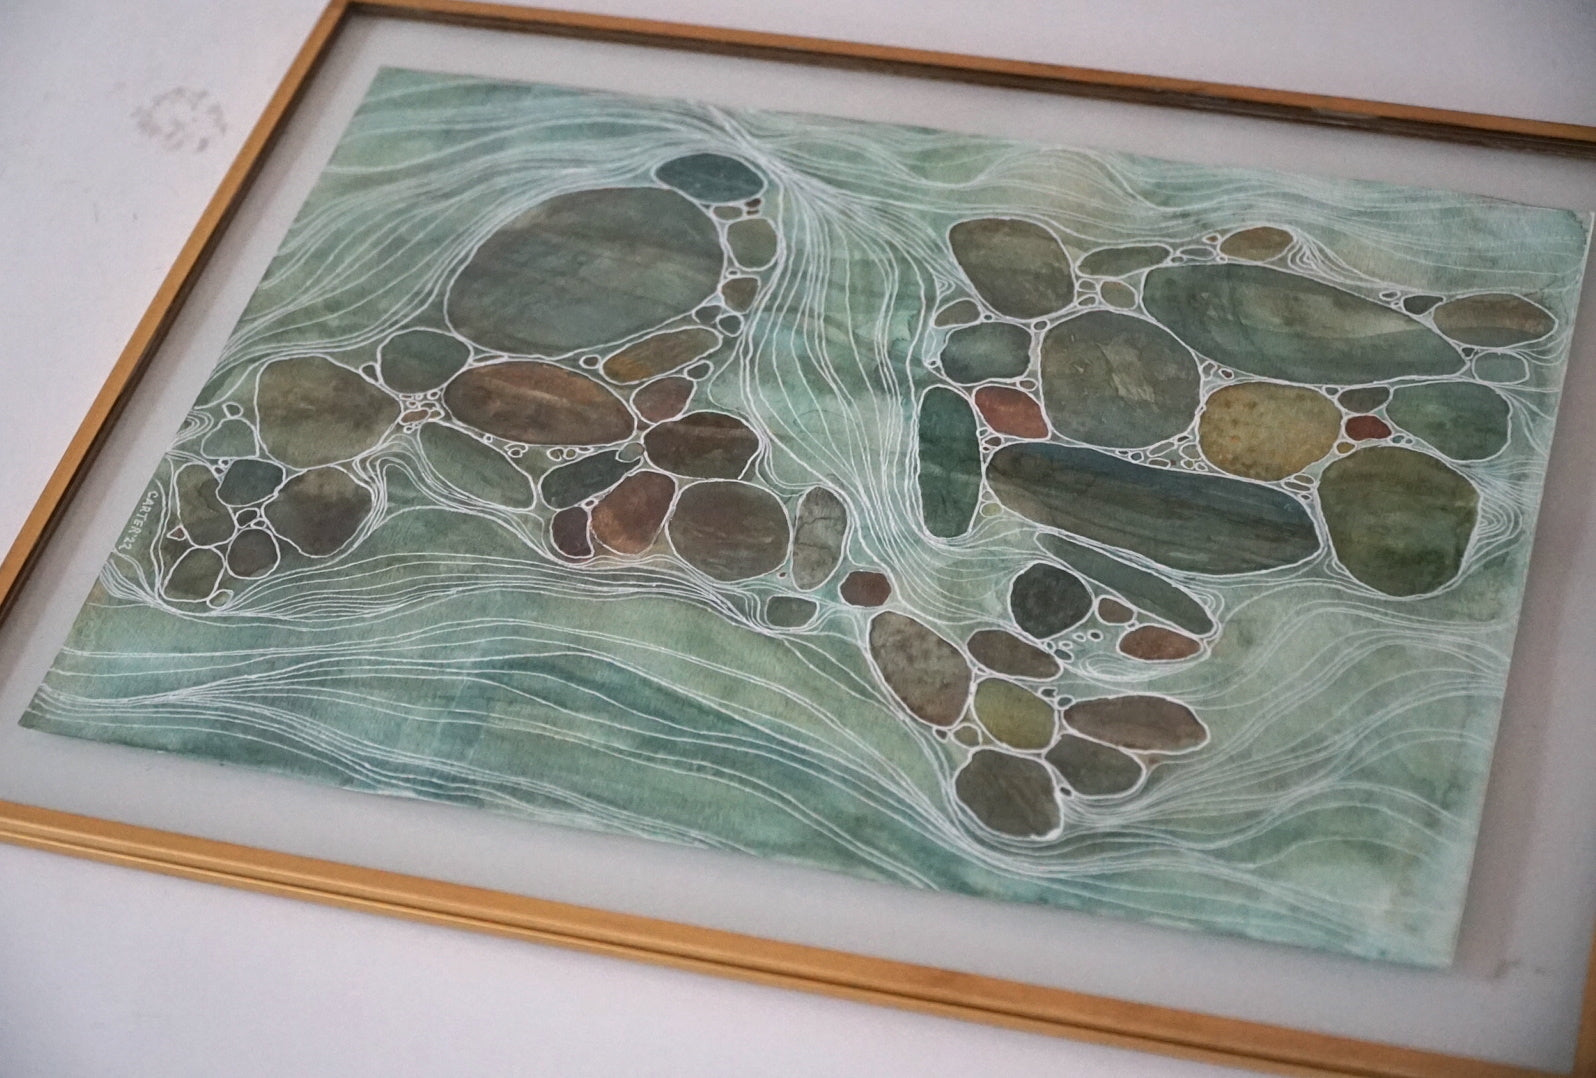 Original Framed Watercolor and Ink Painting - Serene River Rocks - Brass Float Framed Original Pen and Watercolor Painting